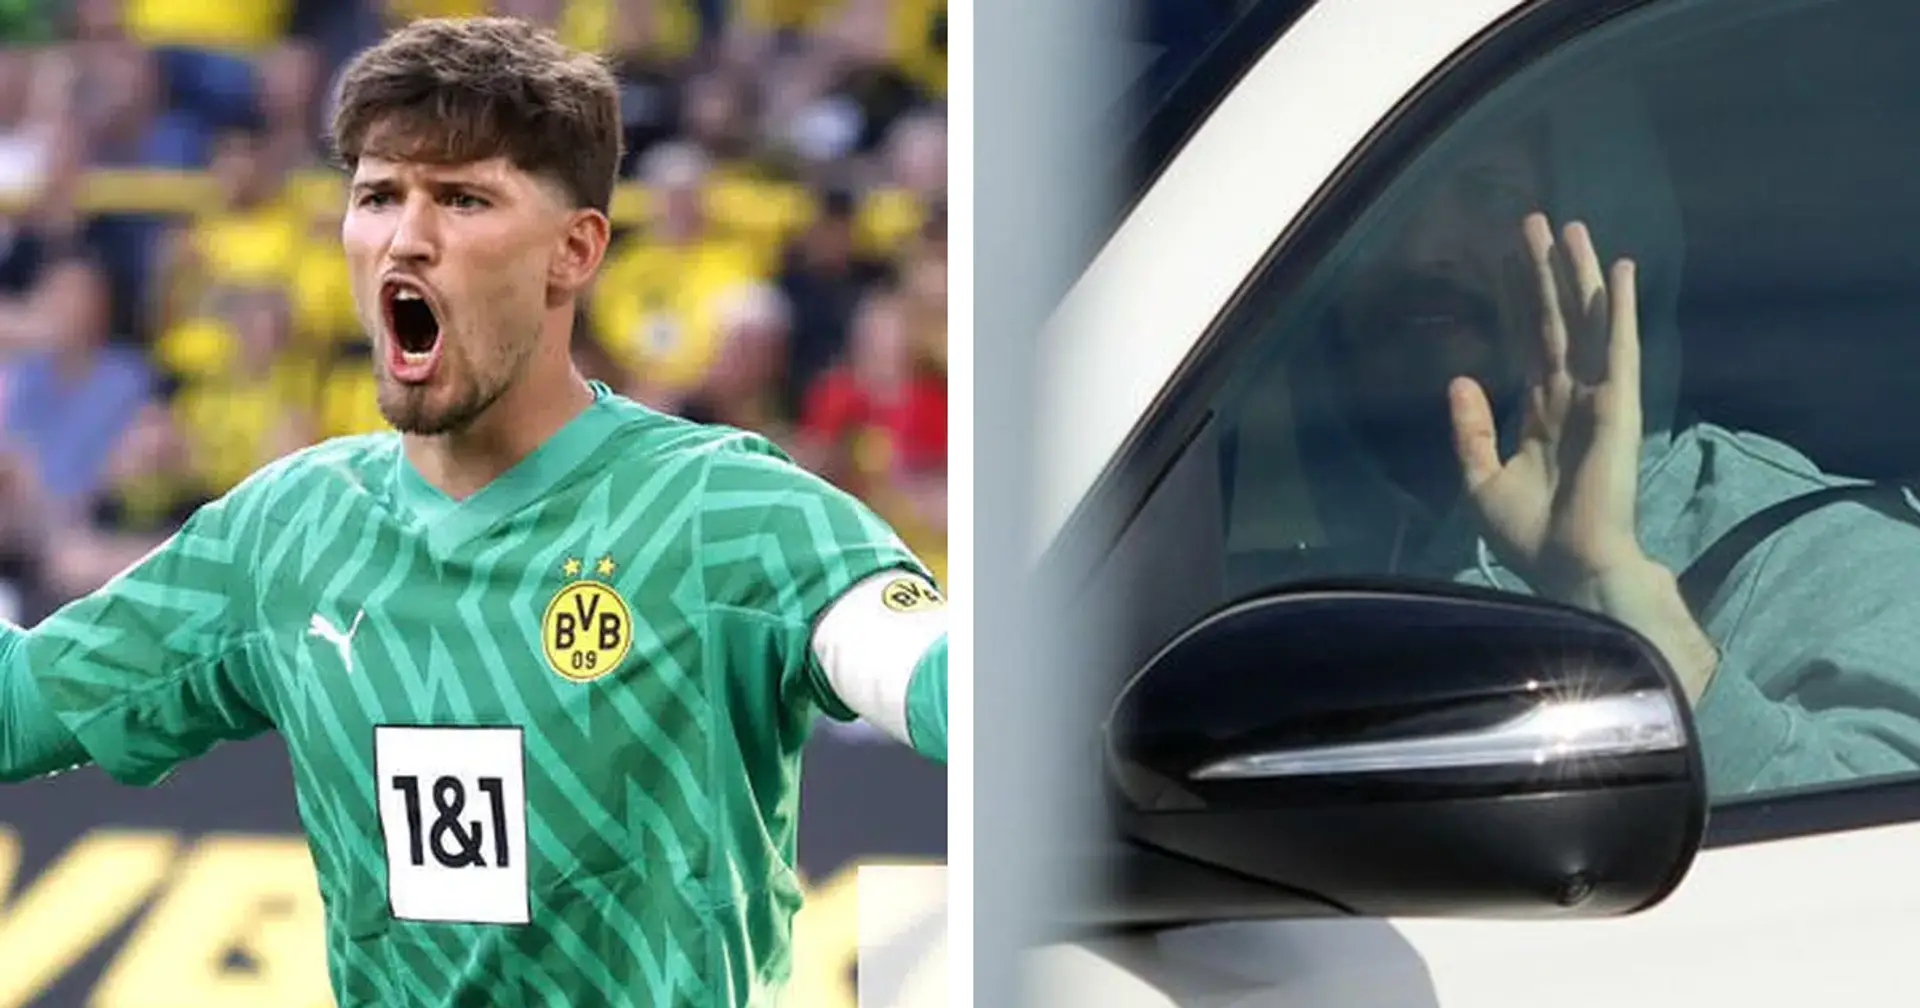 Kehrten Kobel und Malen heute ins Mannschaftstraining zurück? Personal-Update bei Borussia Dortmund